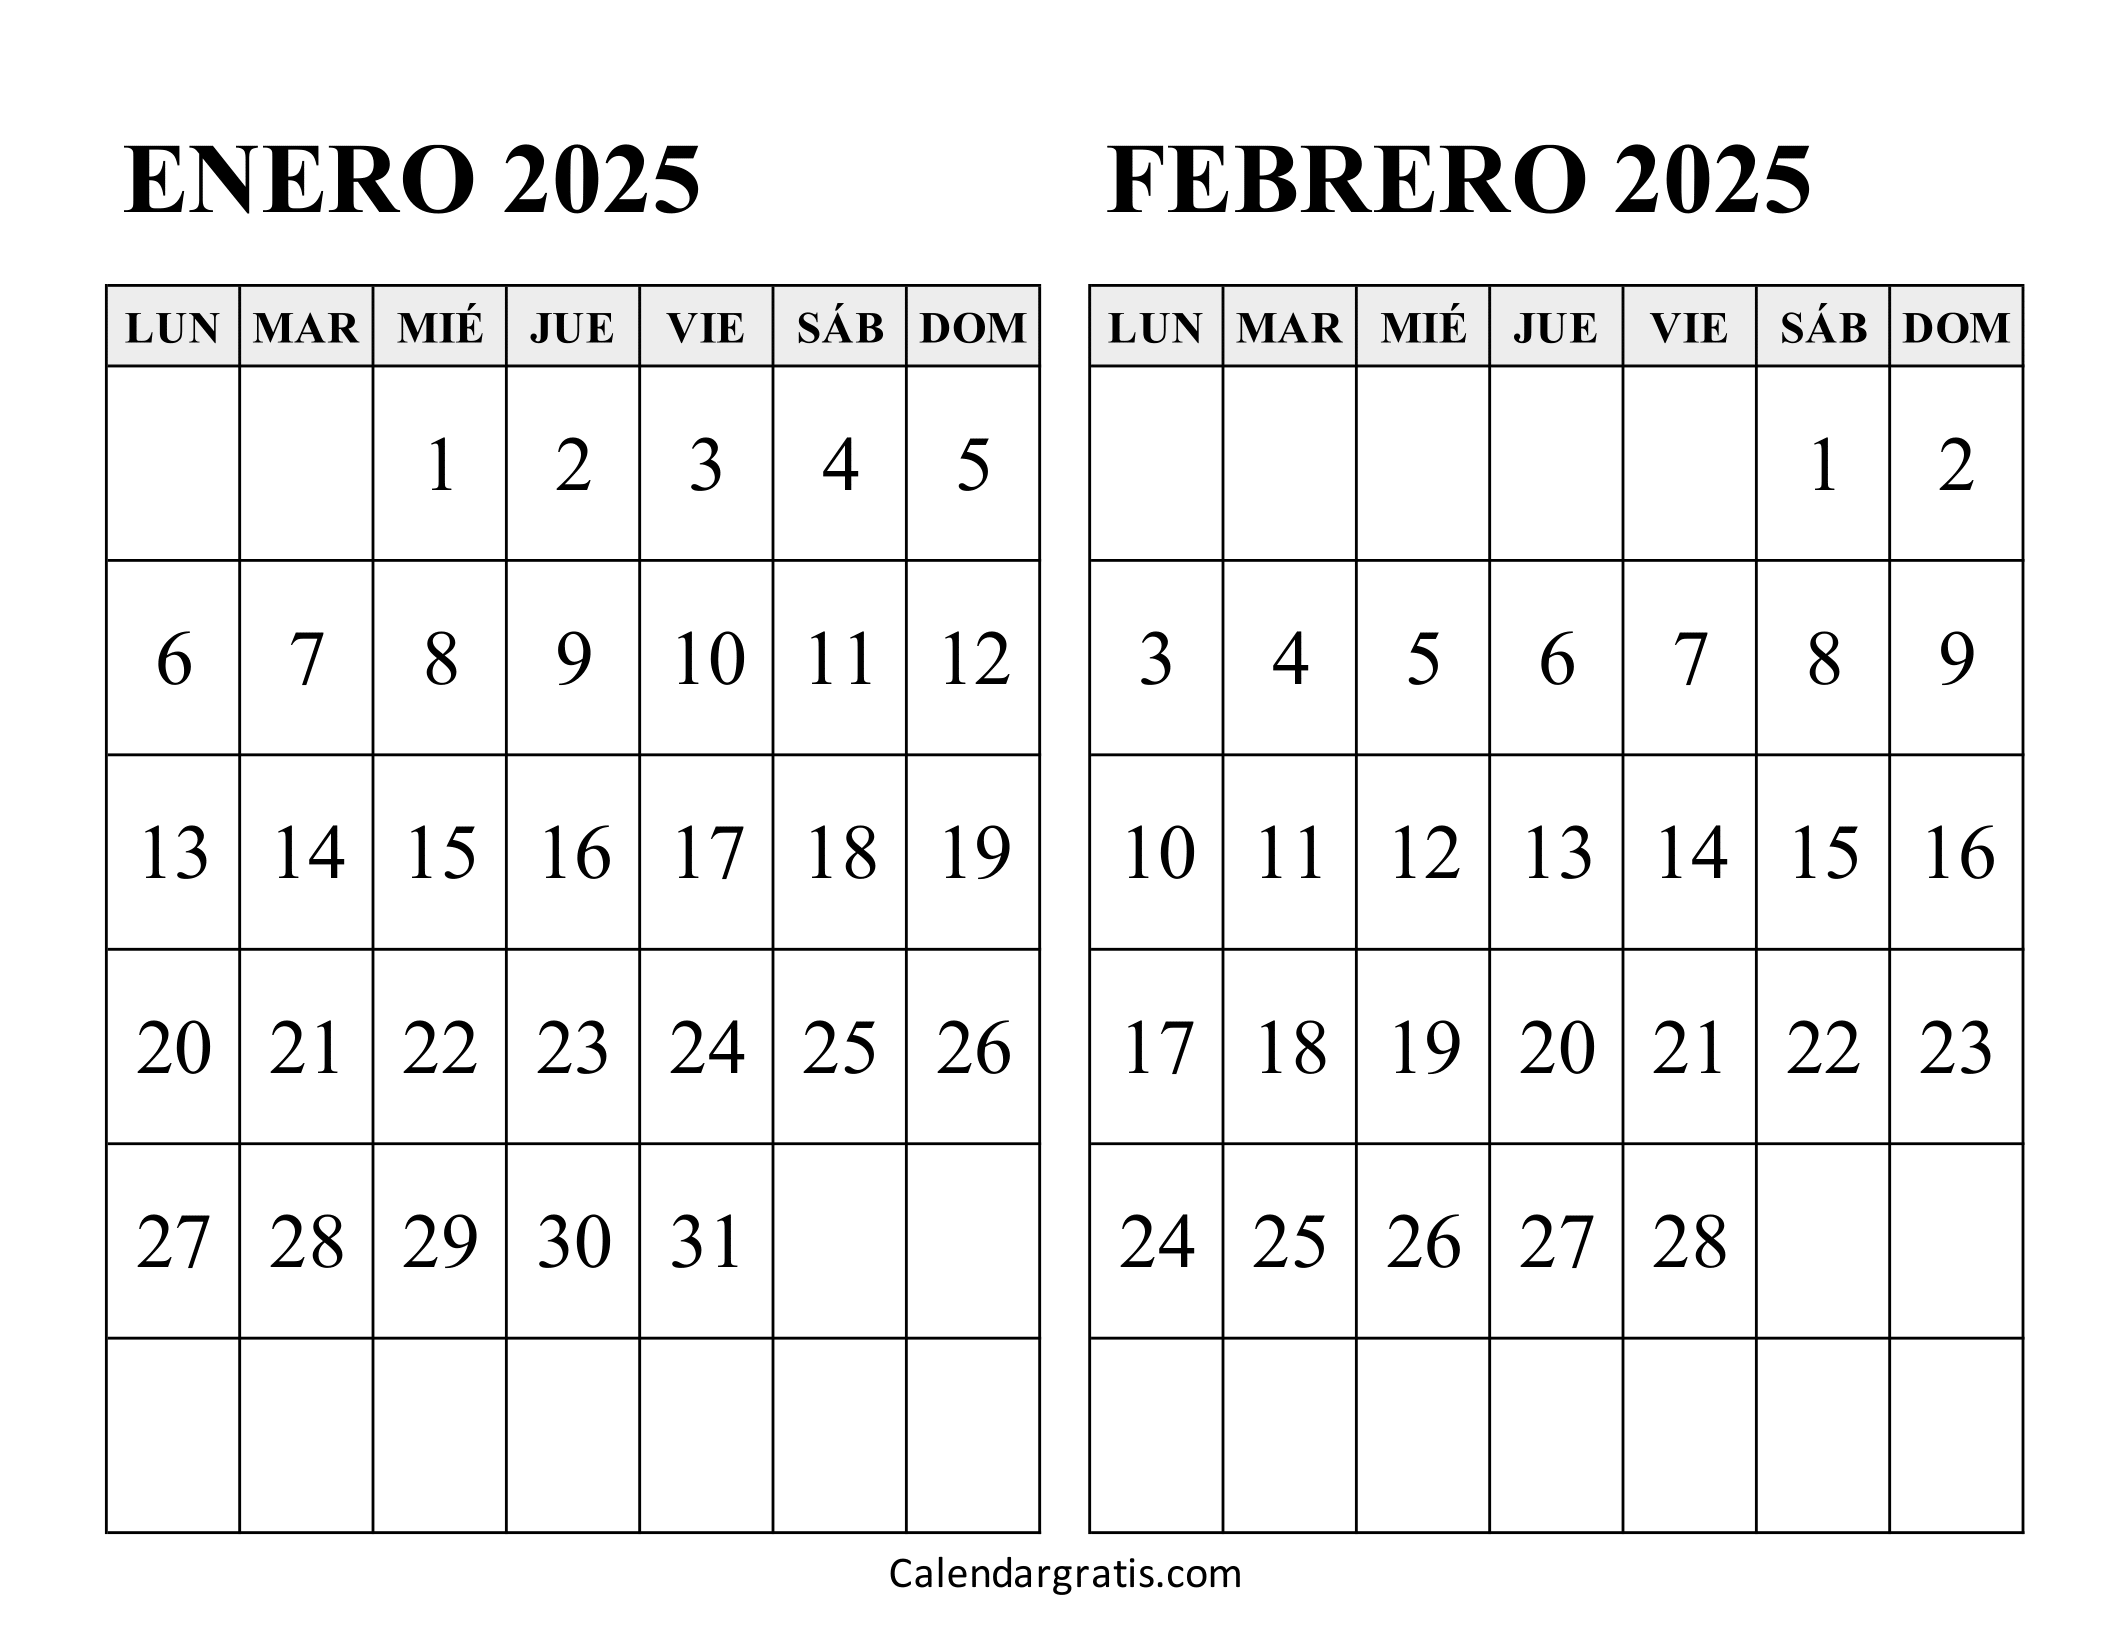 Calendario enero y febrero 2025